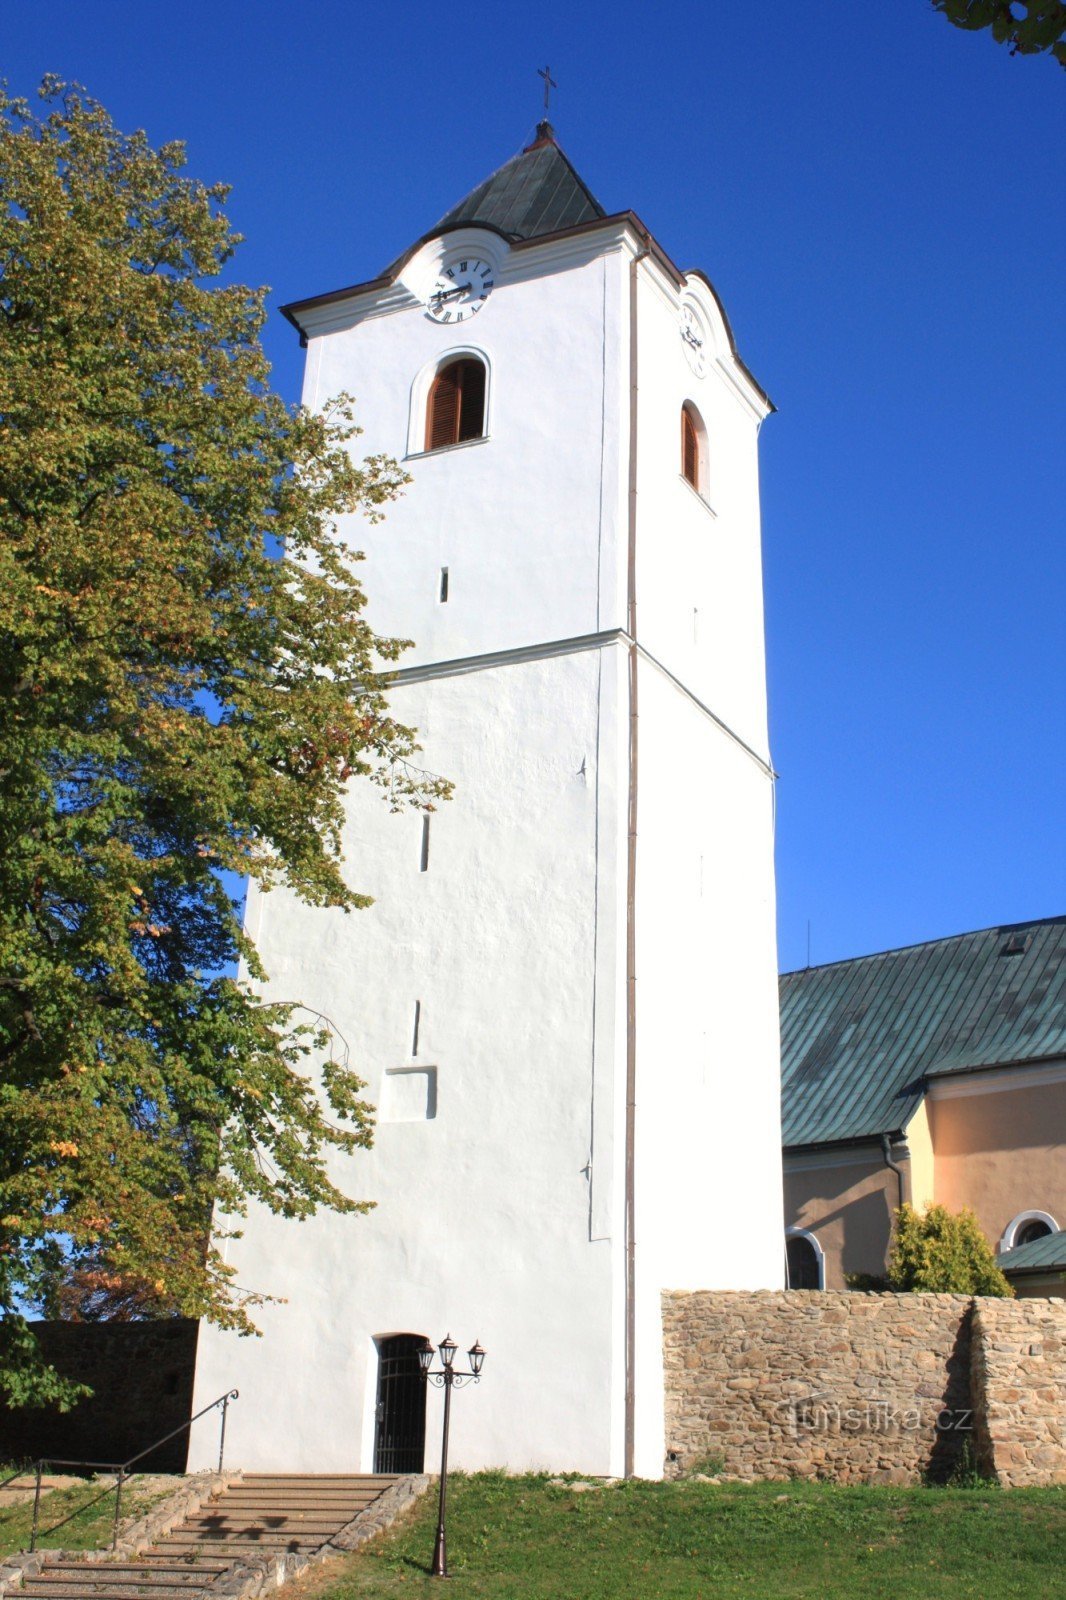 Osová Bítýška - église de St. Jacob le Majeur